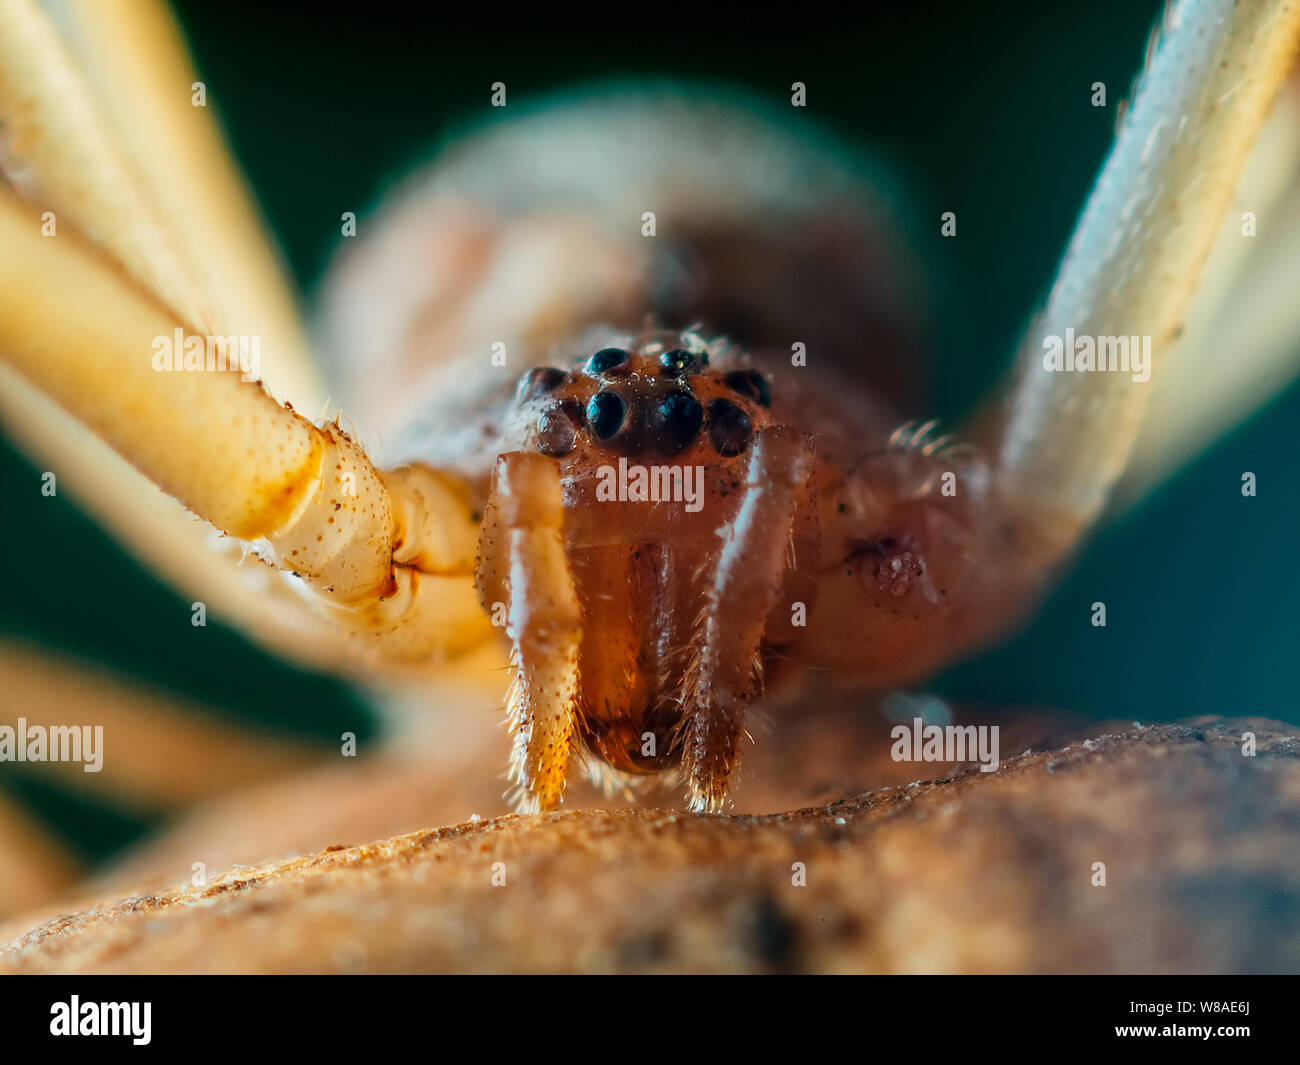 Brown (Latrodectus geometricus araignée veuve frontale) close-up avec les yeux d'araignée visible Banque D'Images